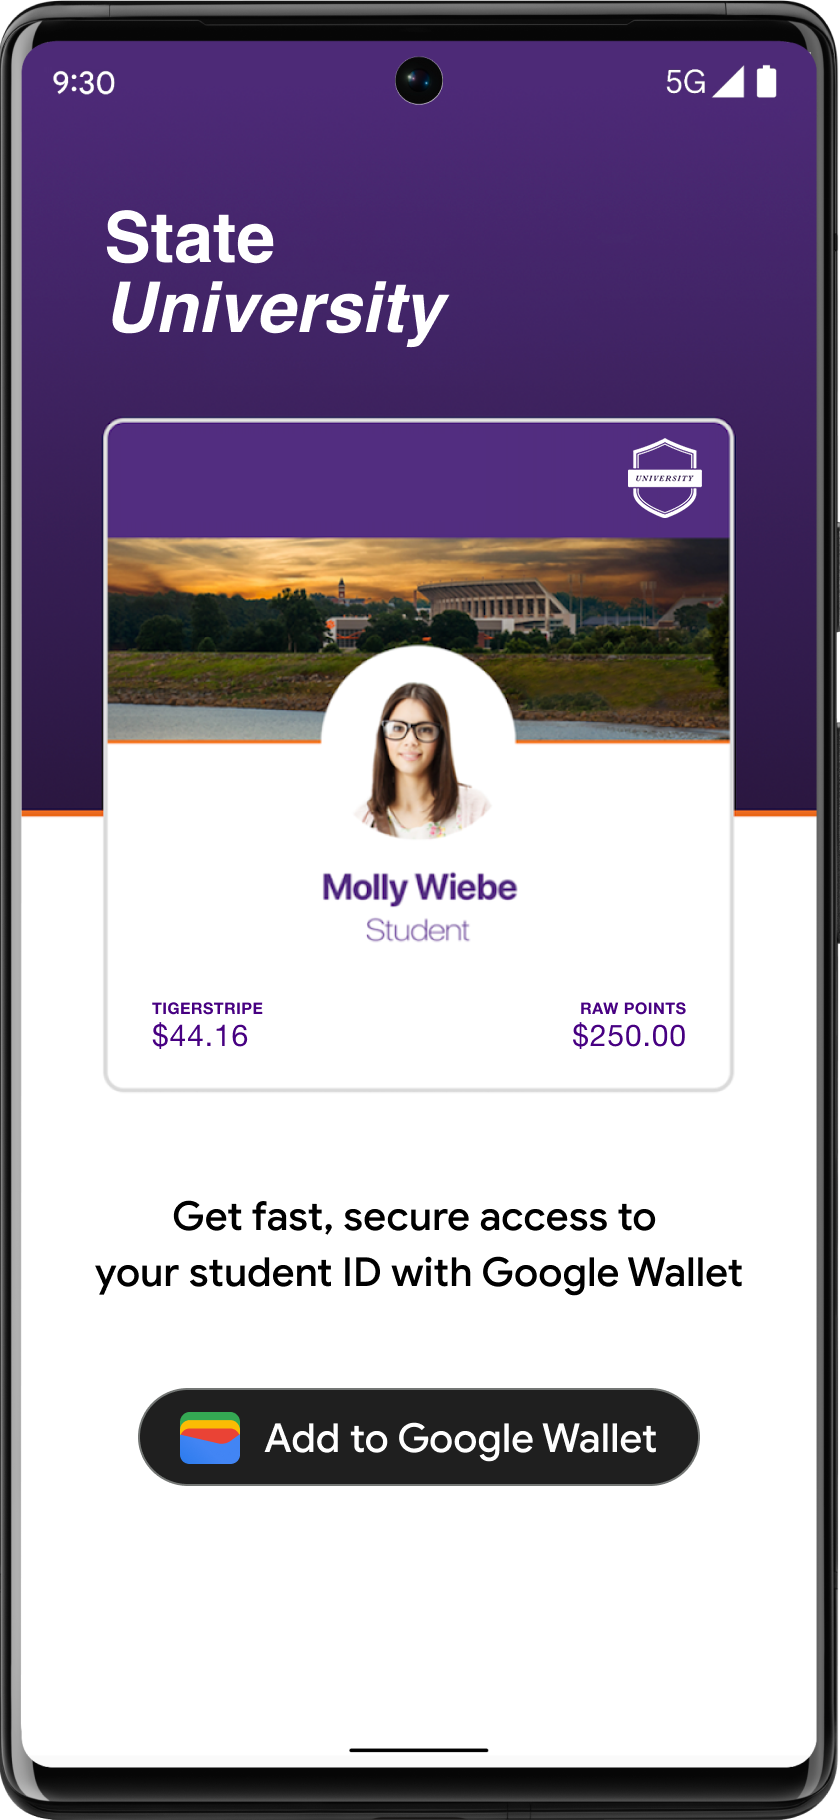 Tombol Tambahkan ke Google Wallet yang ditempatkan secara jelas di aplikasi akun
       siswa.